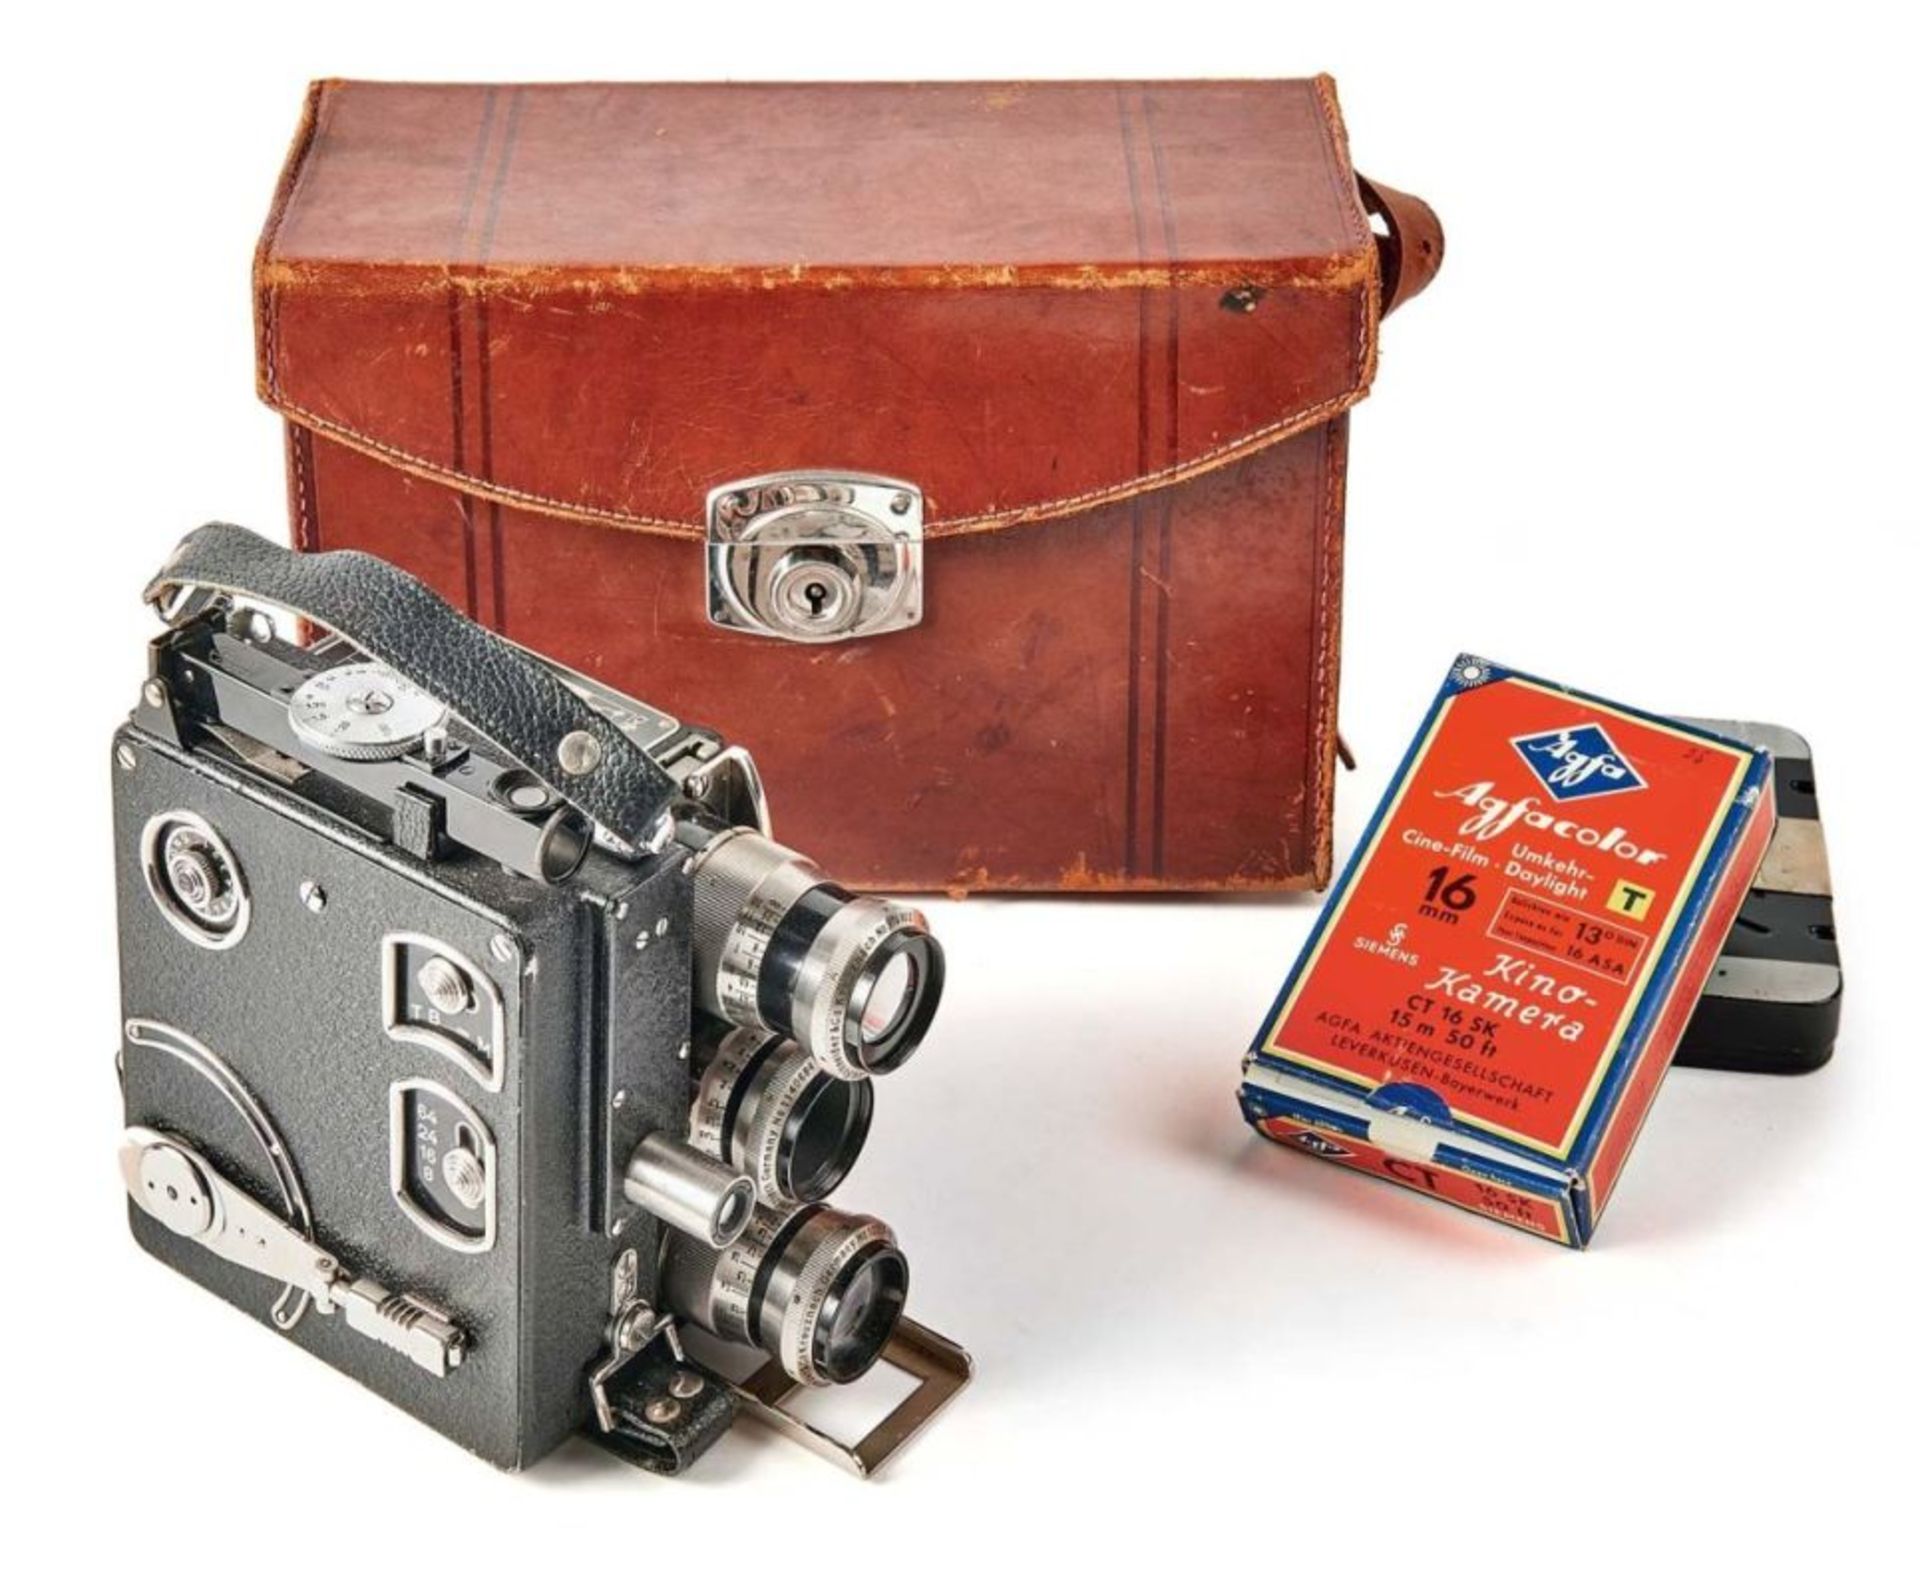 Kinokamera Modell D im LedergehäuseSiemens & Halske AG, Berlin - 193616-mm-Filmkamera mit